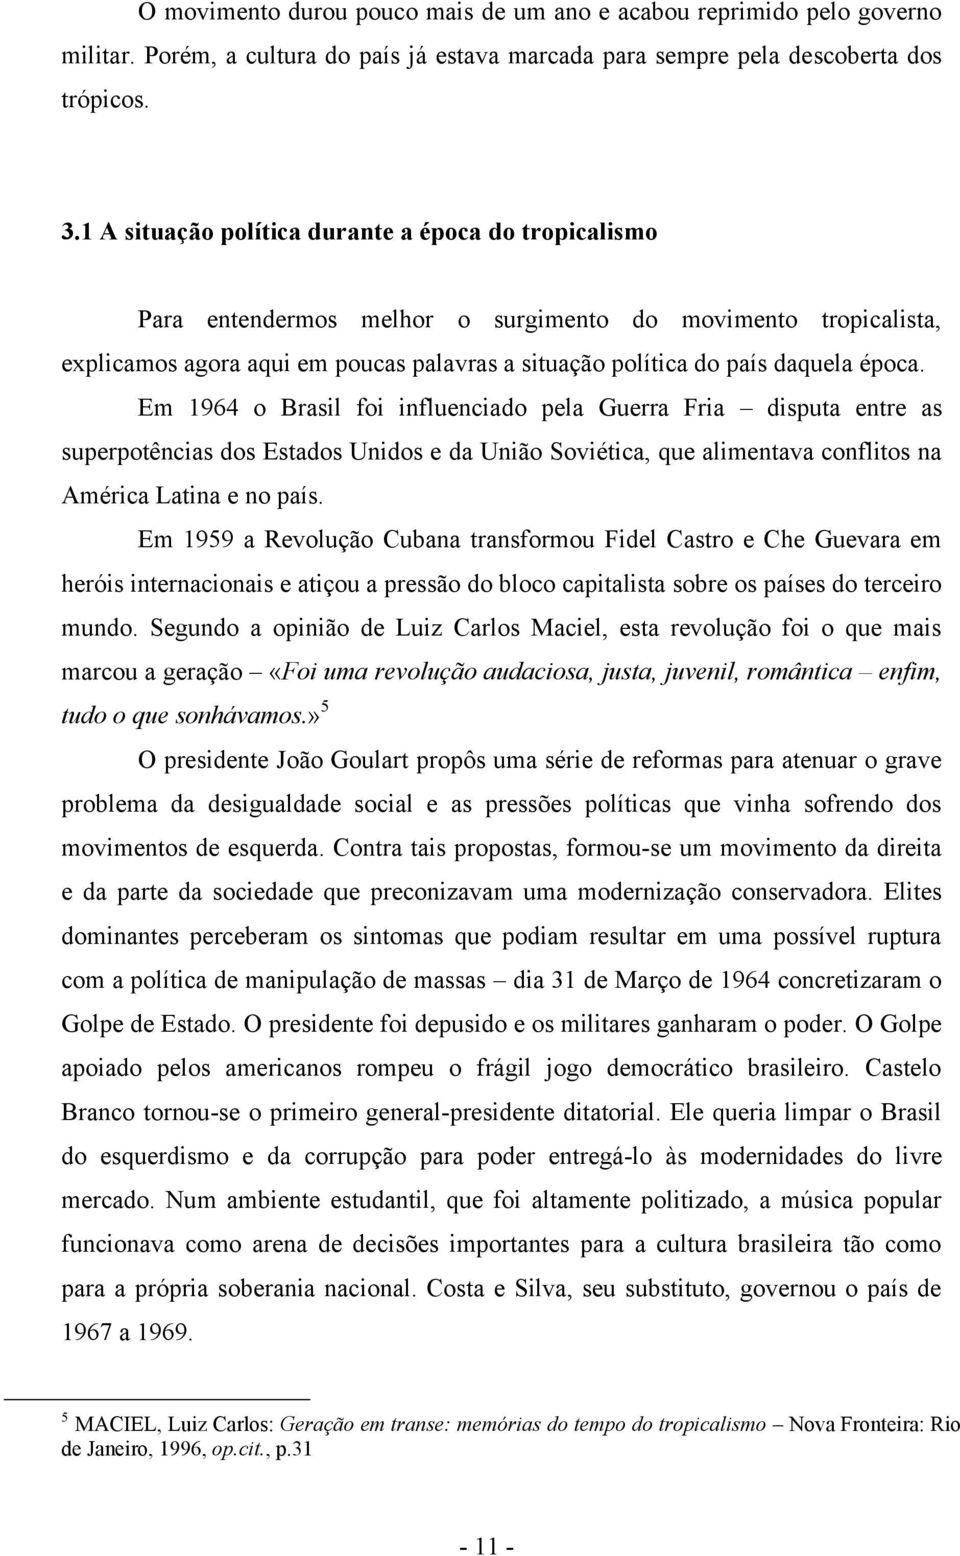 época. Em 1964 o Brasil foi influenciado pela Guerra Fria disputa entre as superpotências dos Estados Unidos e da União Soviética, que alimentava conflitos na América Latina e no país.